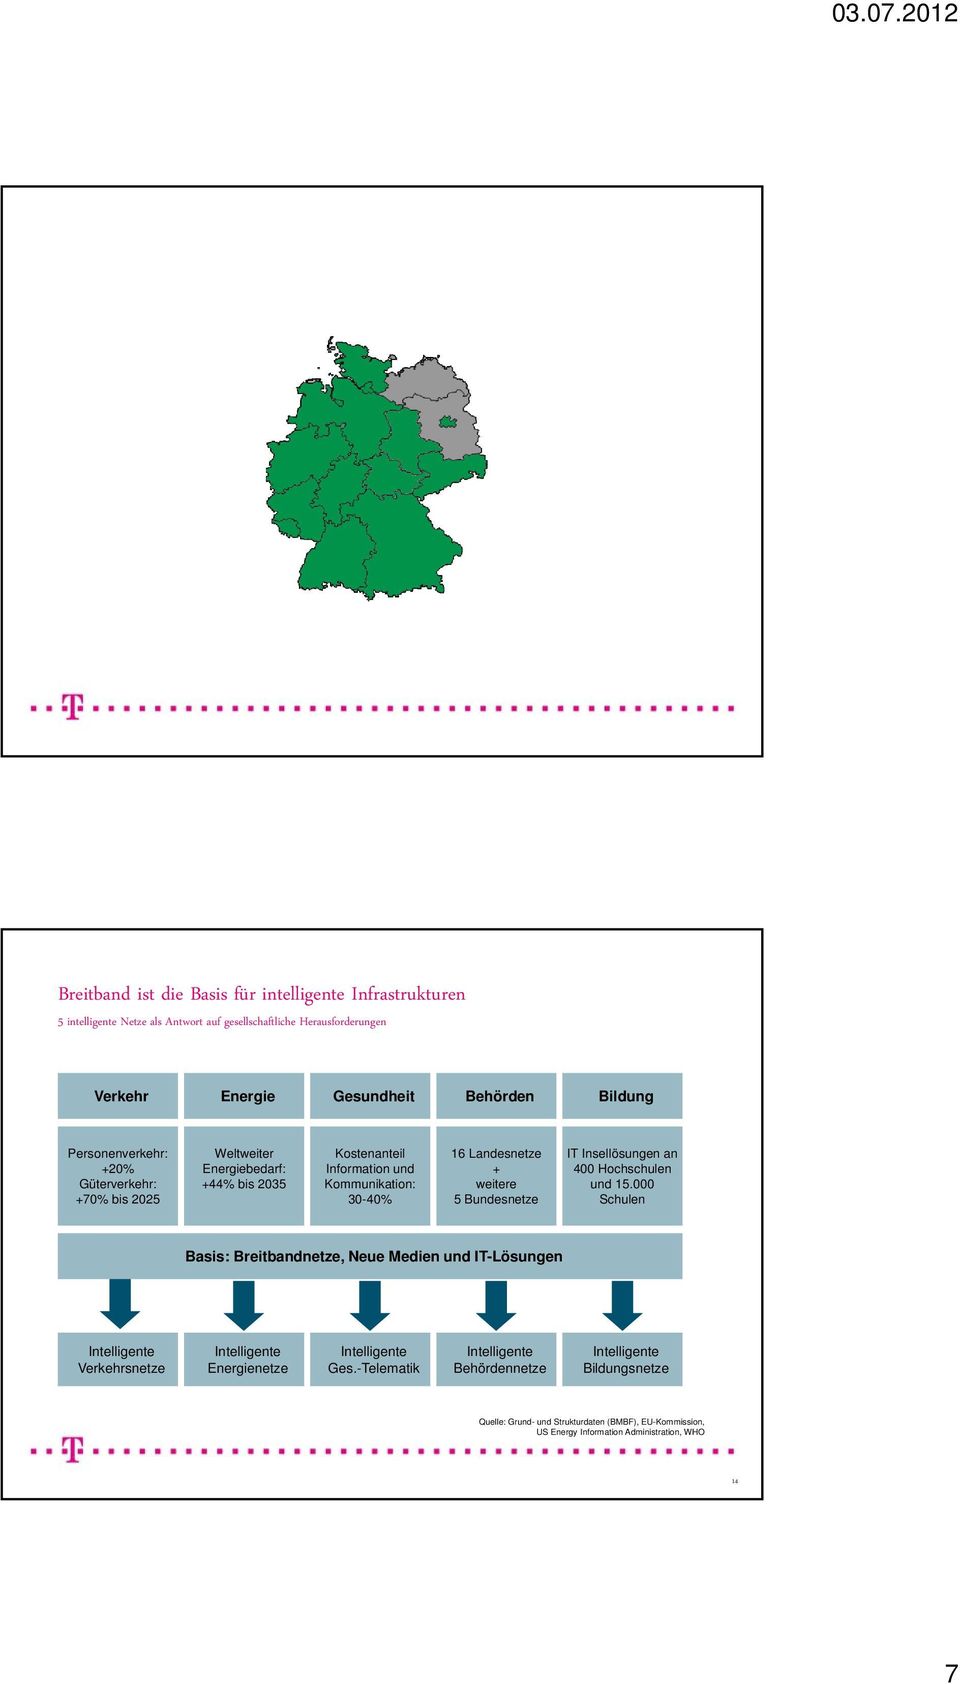 30-40% 16 Landesnetze + weitere 5 Bundesnetze IT Insellösungen an 400 Hochschulen und 15.